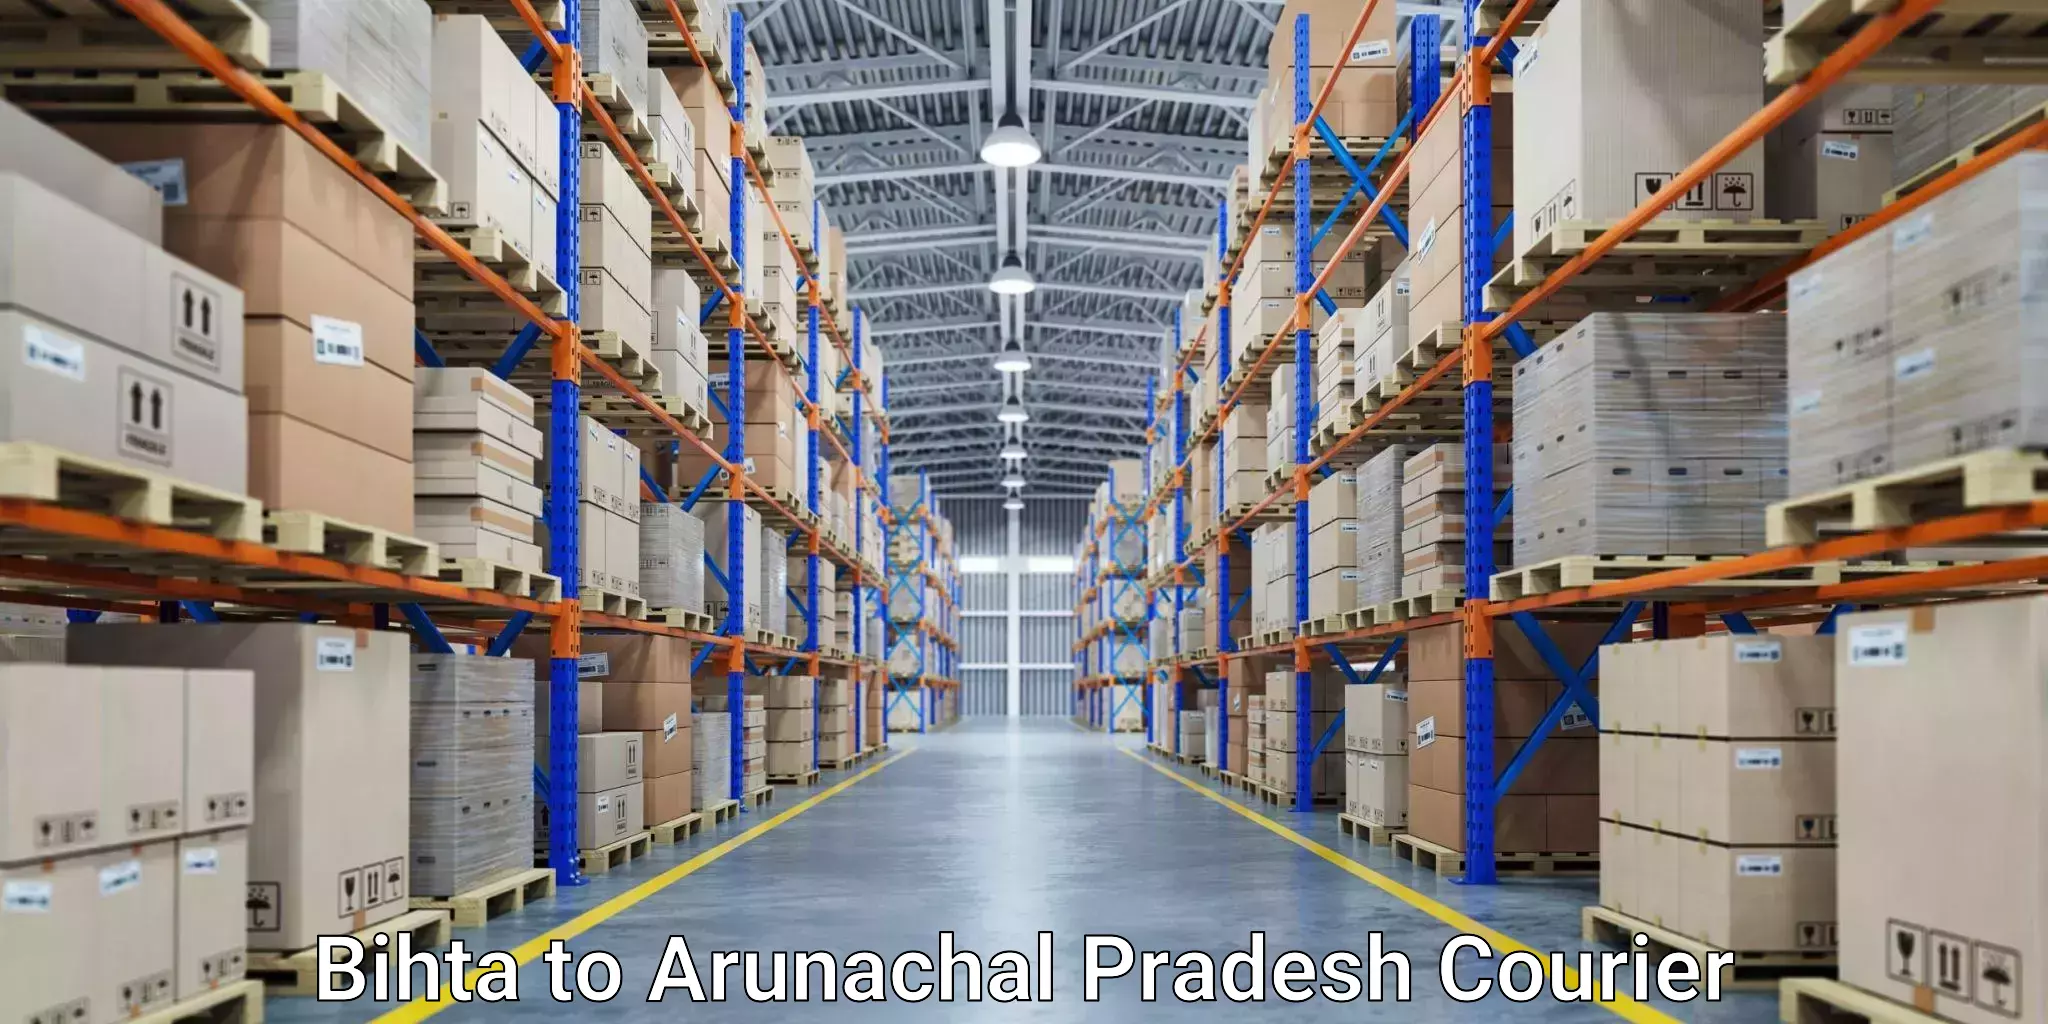 Cash on delivery service Bihta to Arunachal Pradesh